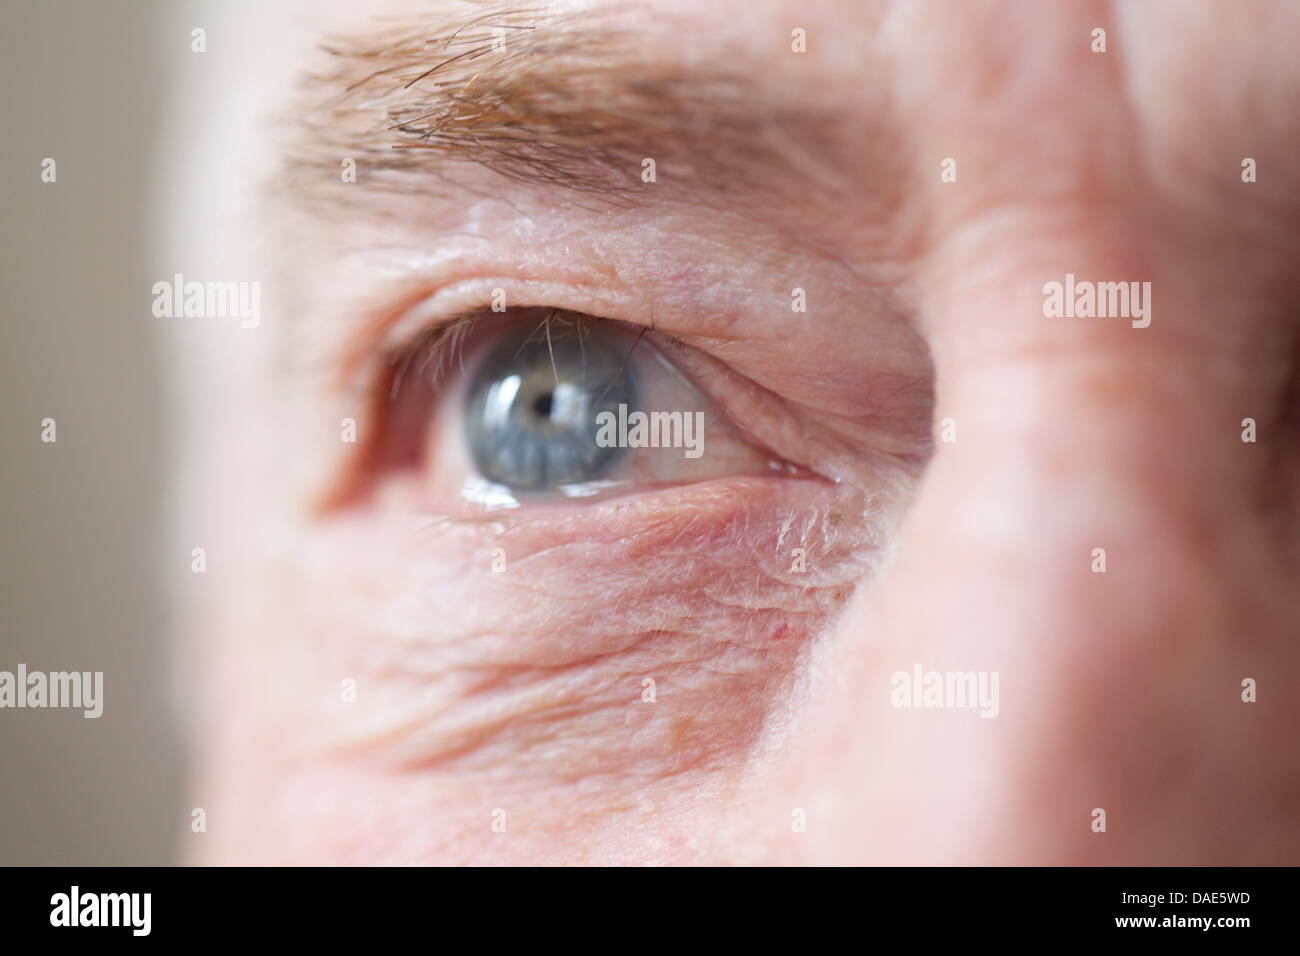 Senior man's eye, close up Foto Stock